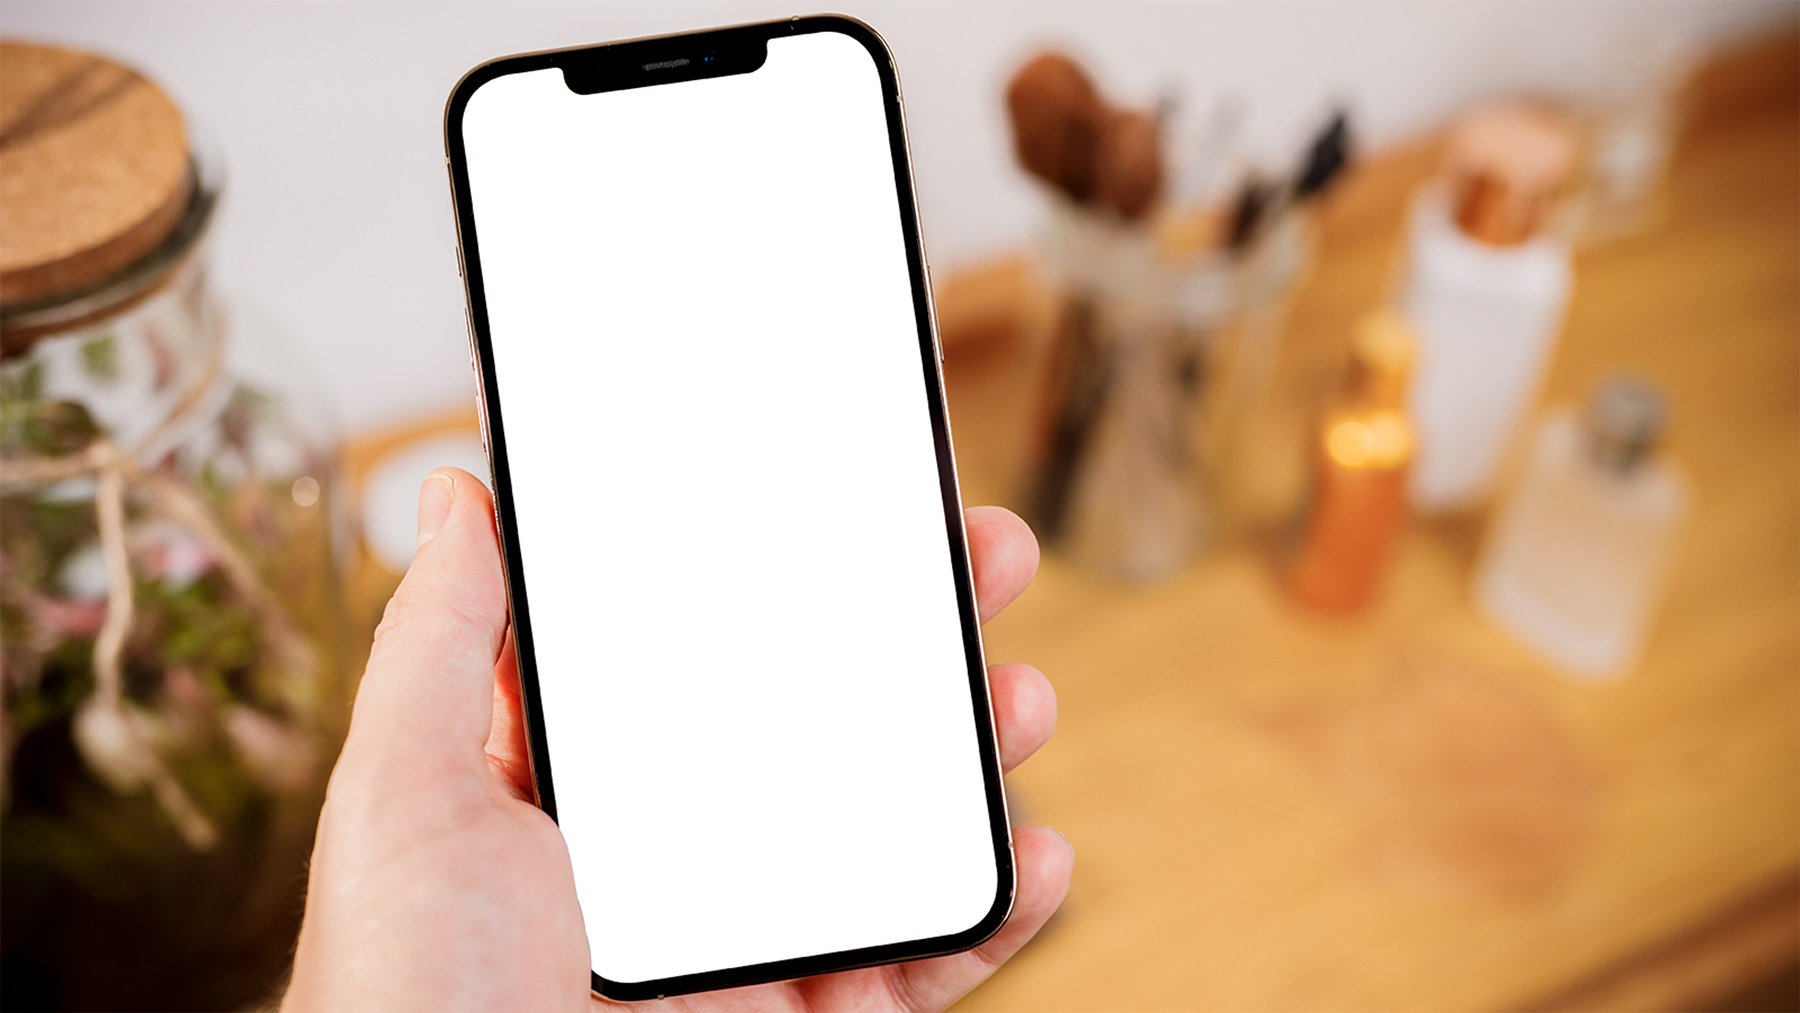 Um smartphone está em um fio branco ao lado da tela do telefone